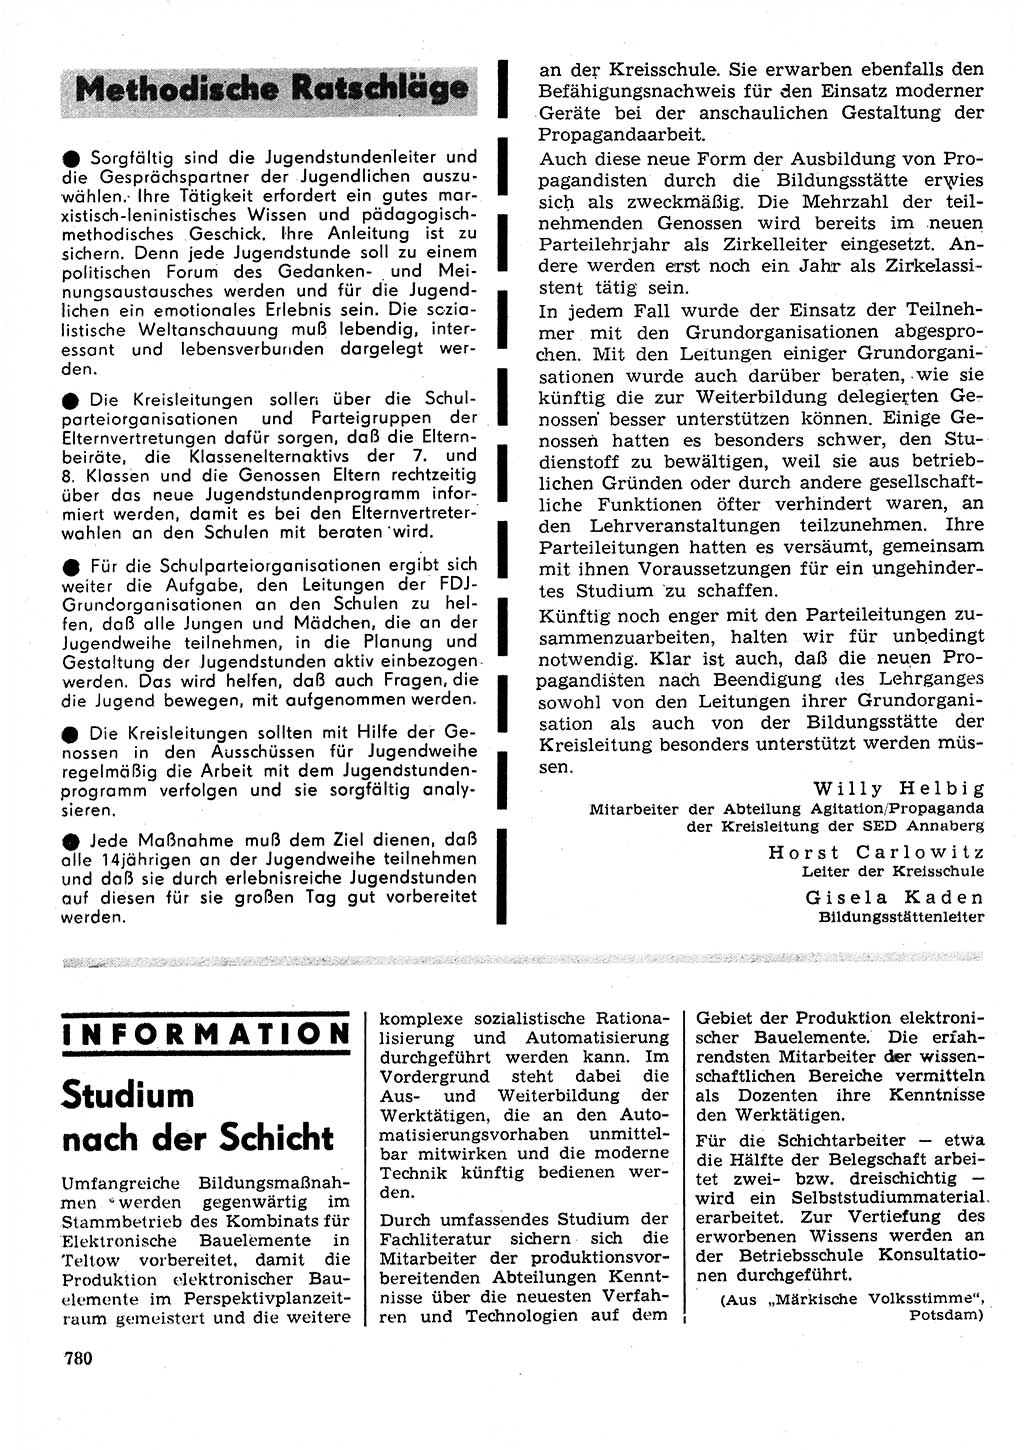 Neuer Weg (NW), Organ des Zentralkomitees (ZK) der SED (Sozialistische Einheitspartei Deutschlands) fÃ¼r Fragen des Parteilebens, 25. Jahrgang [Deutsche Demokratische Republik (DDR)] 1970, Seite 780 (NW ZK SED DDR 1970, S. 780)